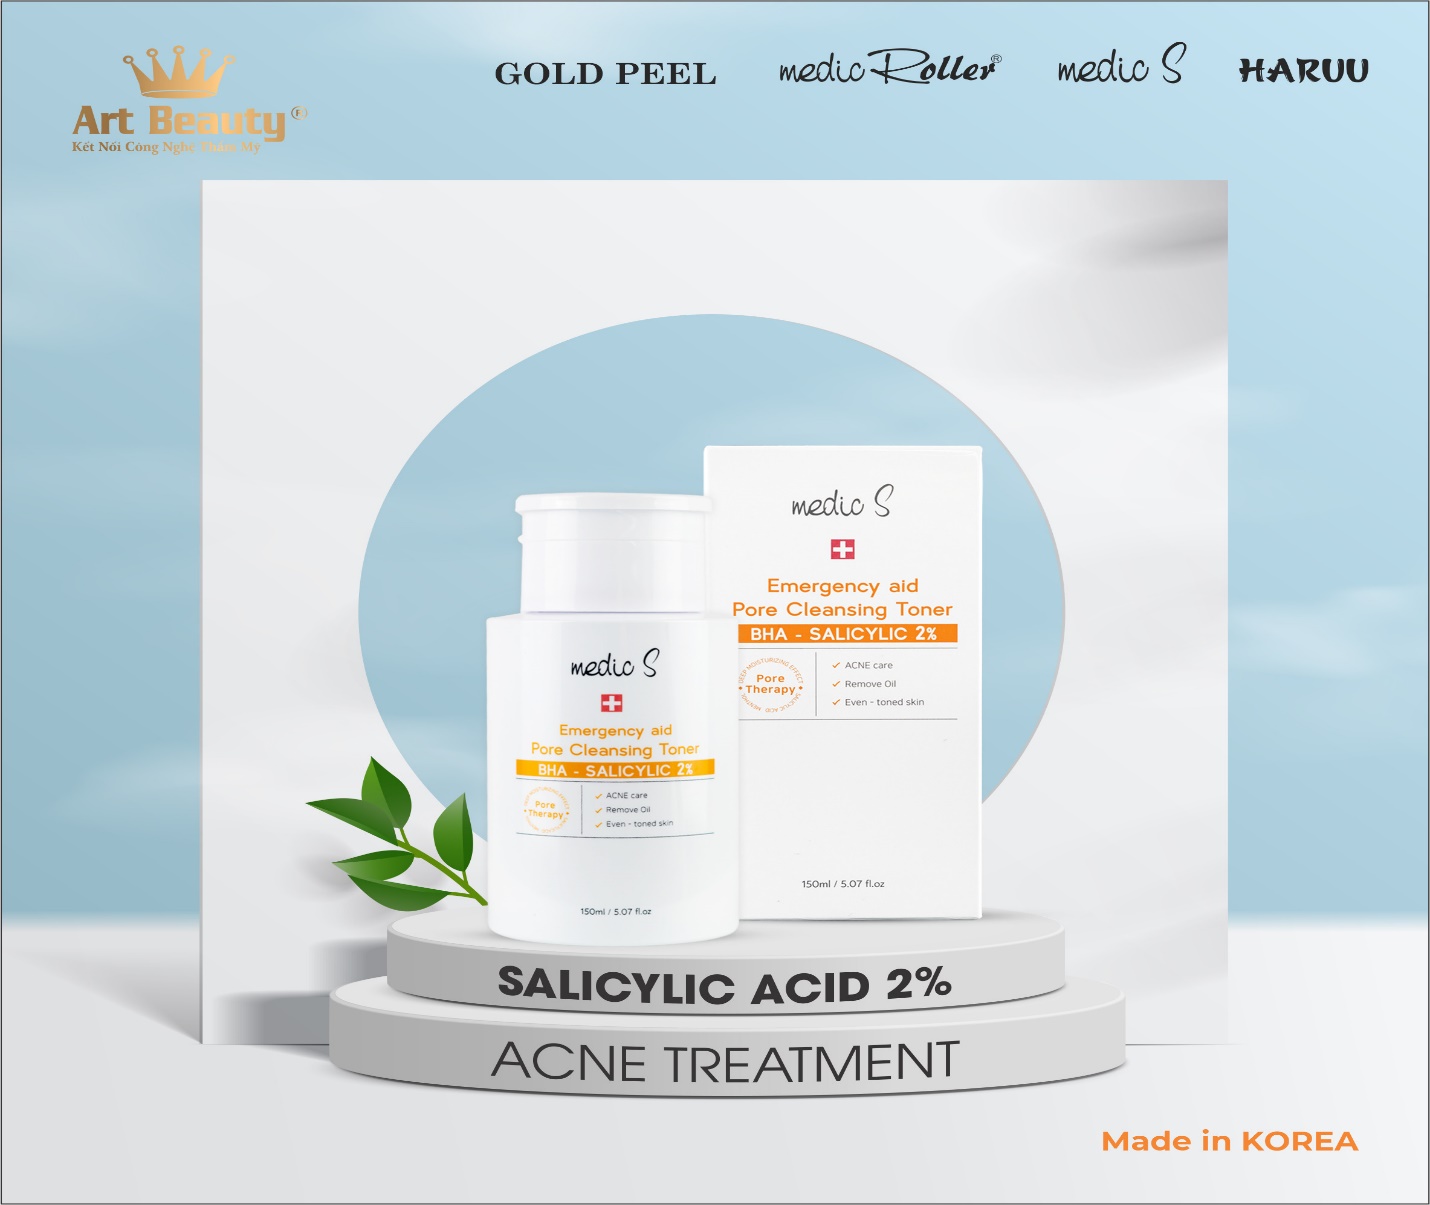 MEDIC S Emergency aid Pore Cleansing Toner - BHA SALICYLIC 2%, mỹ phẩm chính hãng công nghệ Hàn Quốc